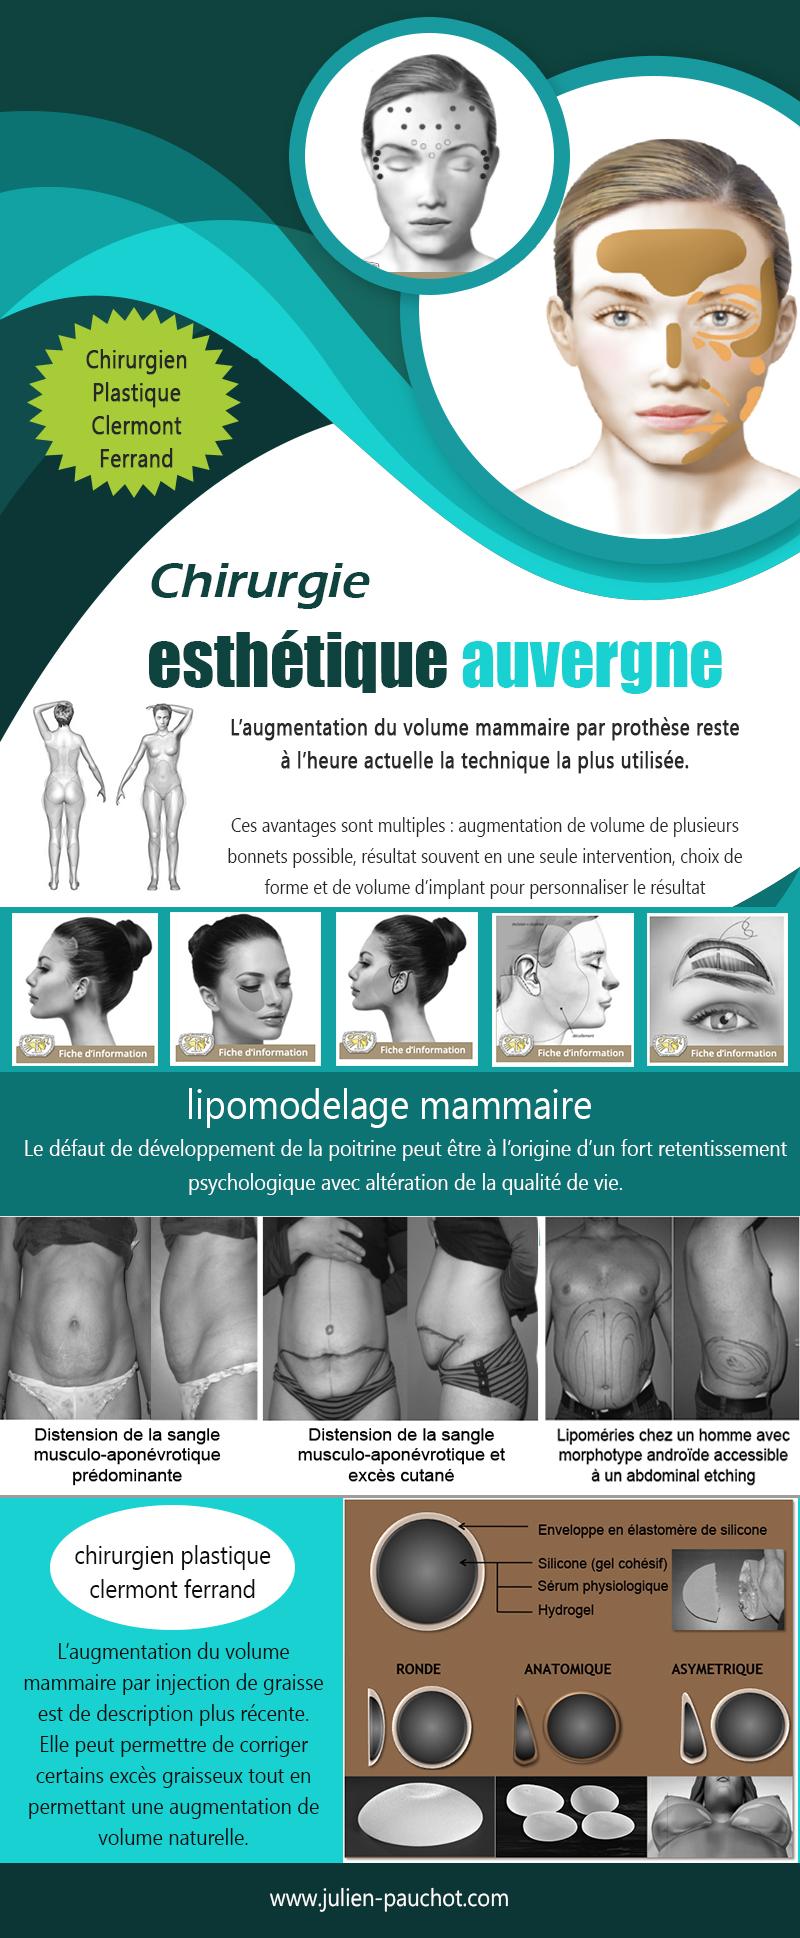 Chirurgie Esthétique Auvergne (2) | http://www.julien-pauchot.com/